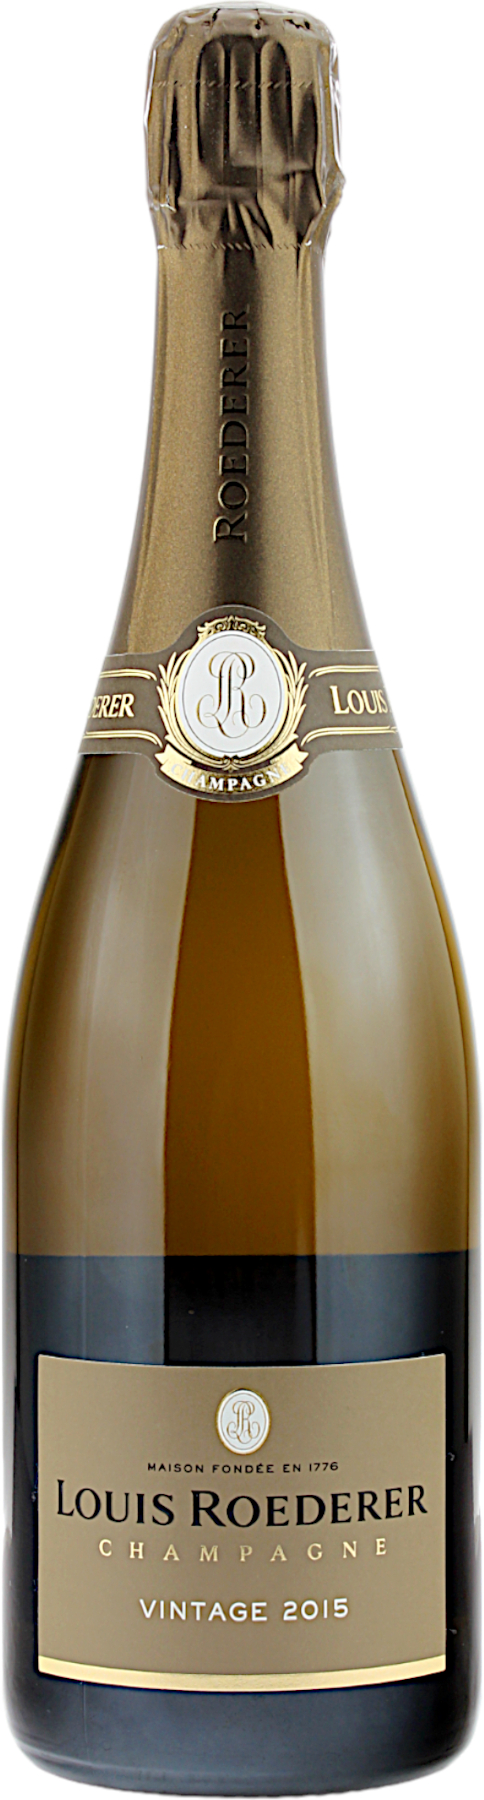 Louis Roederer Vintage 2015 Champagner 12.5% 0,75l